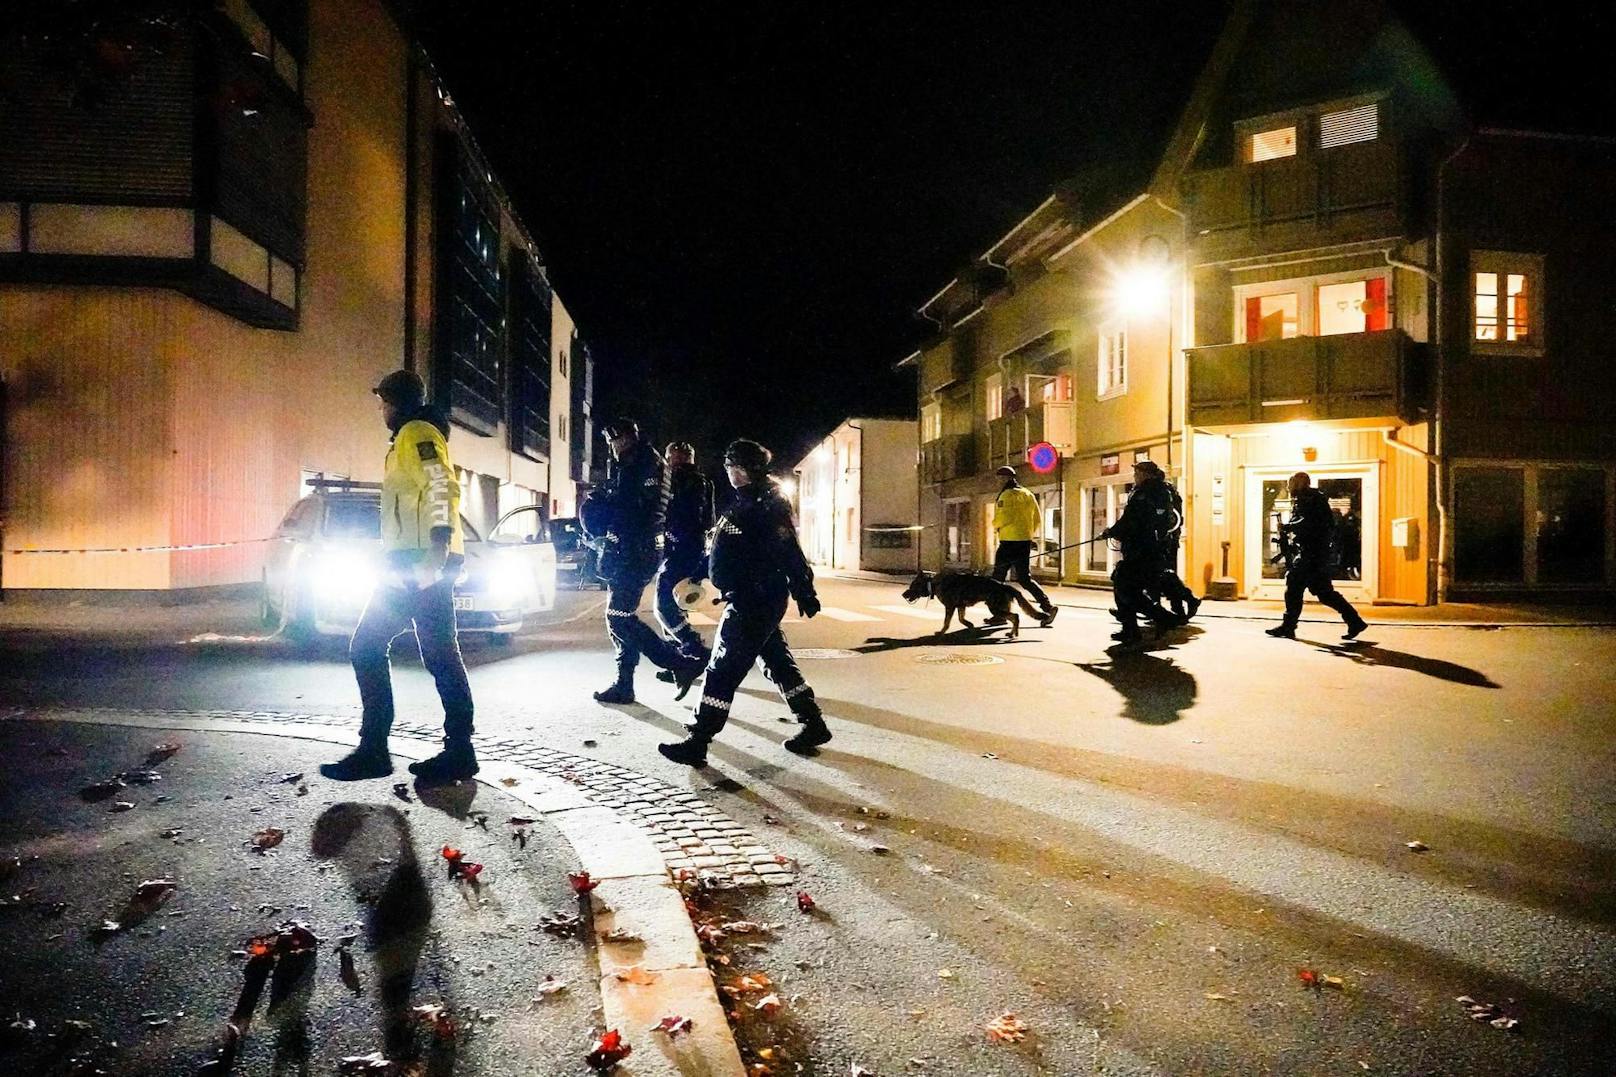 In Norwegen griff ein Mann mit Pfeil und Bogen mehrere Personen an. Es gab Verletzte und auch Tote.